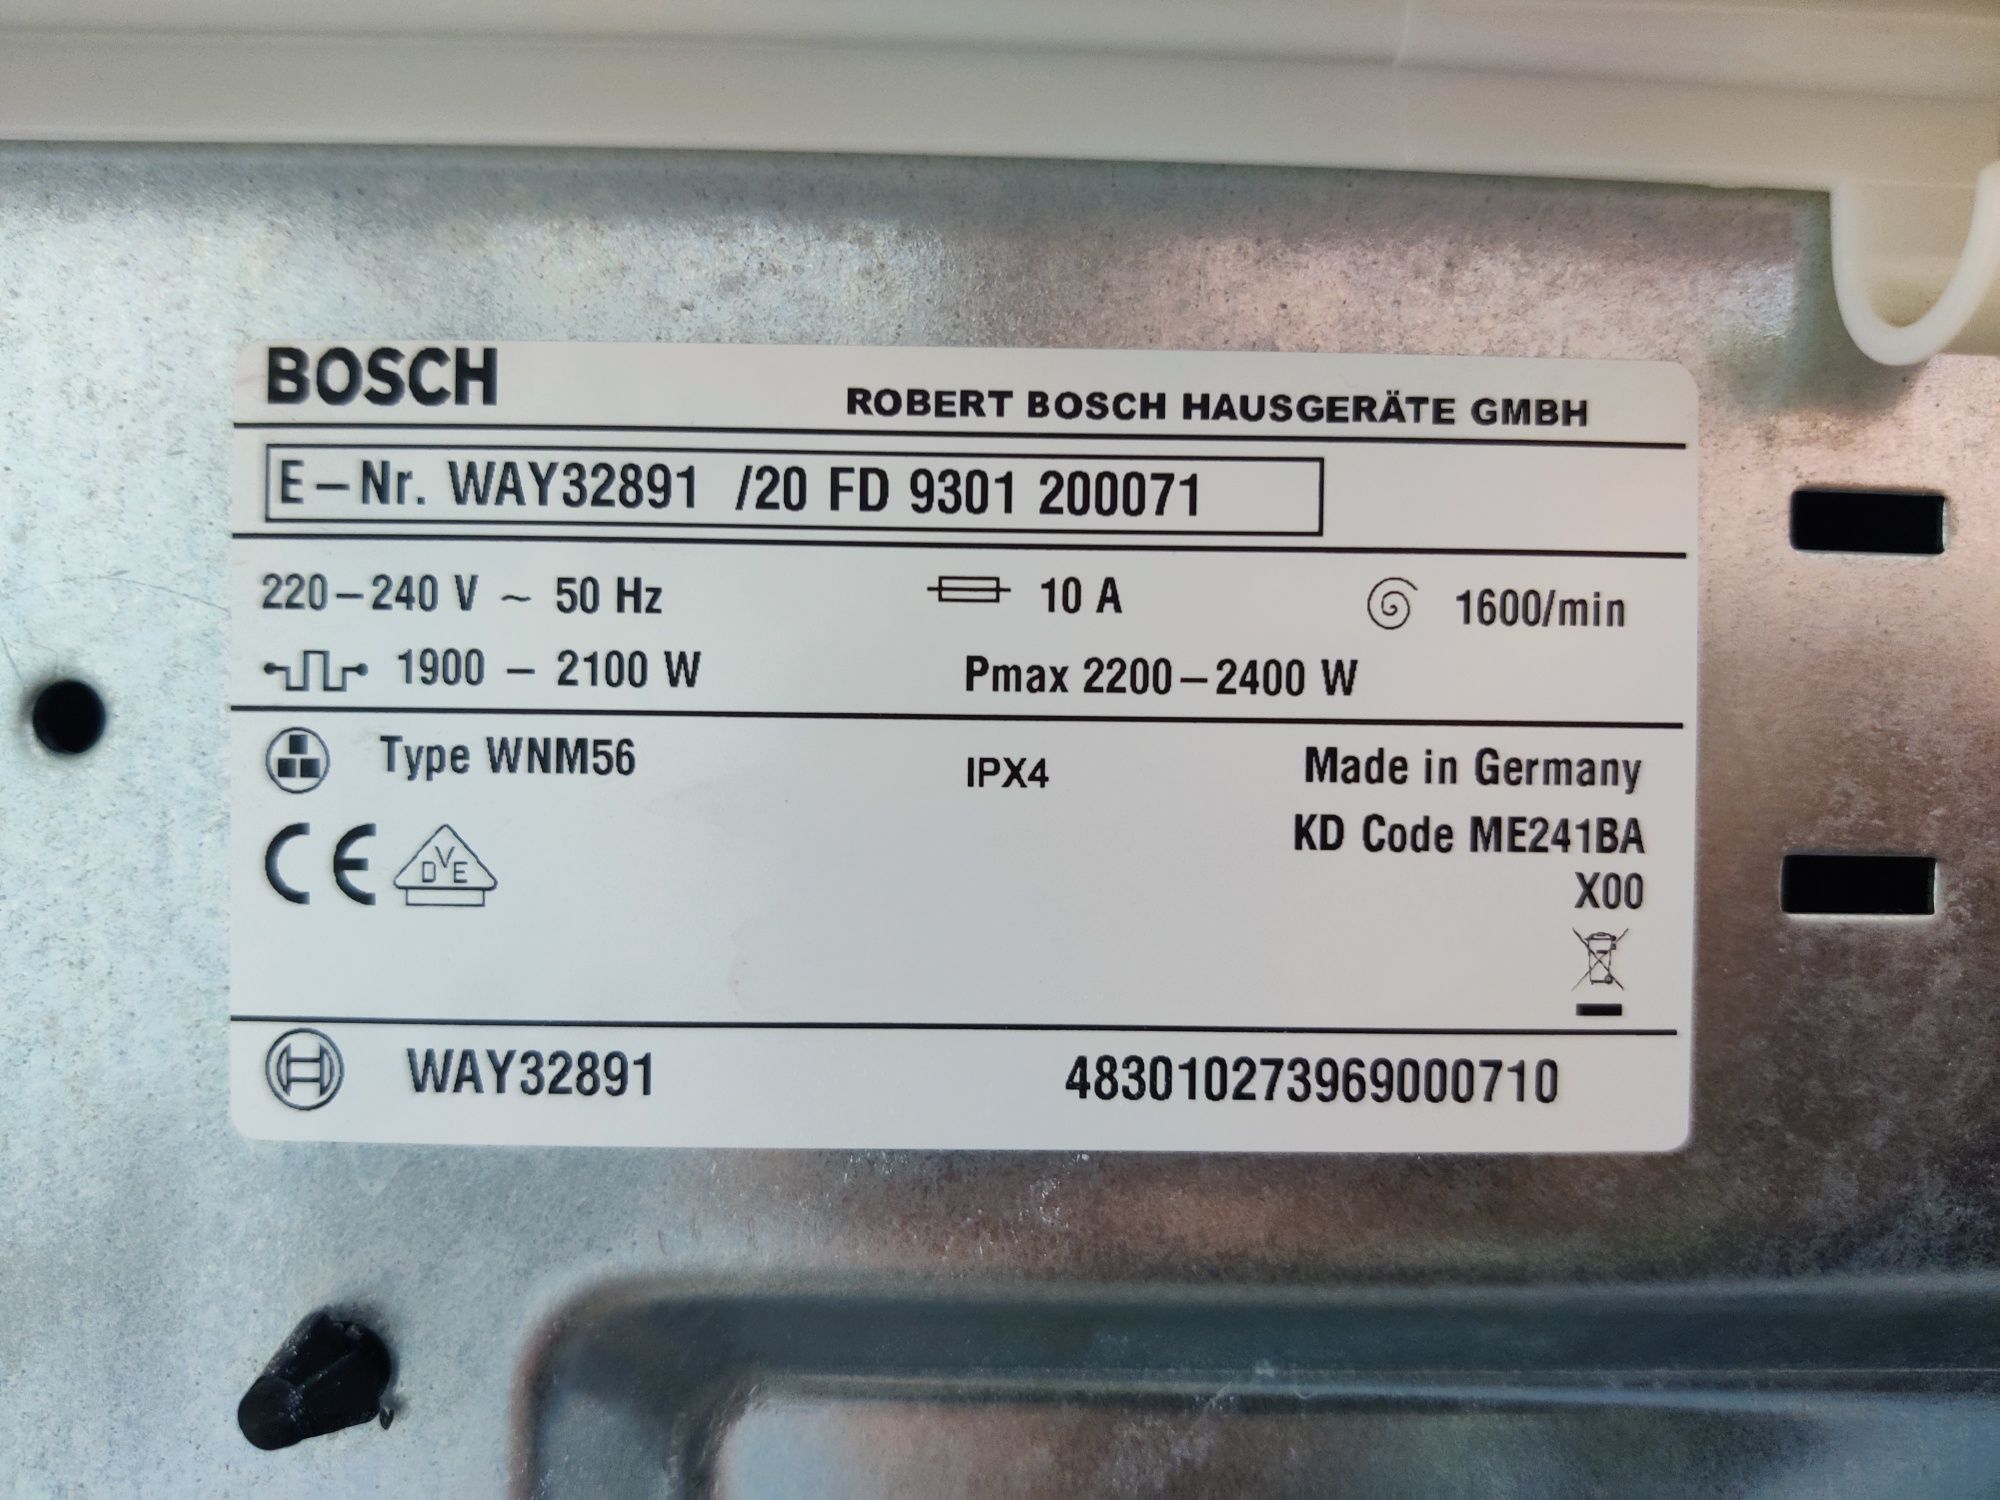 BOSCH™ Home Professional. Стиральная машина i-DoS8кг! AquaSensor.Хром!